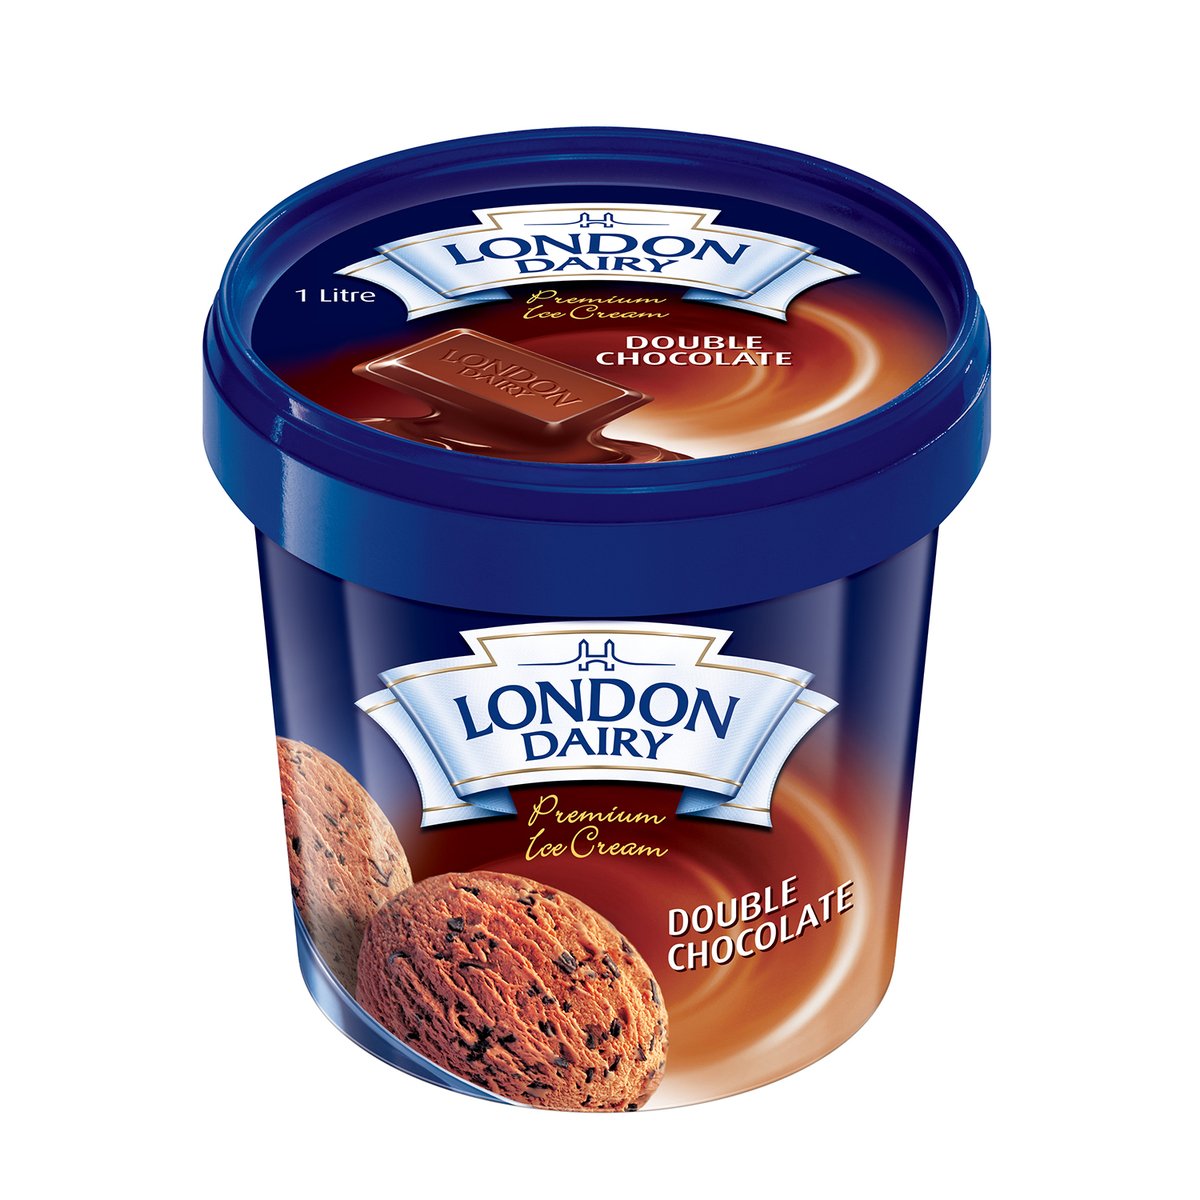 اشتري قم بشراء لندن ديري ايس كريم شوكولاتة 1 لتر Online at Best Price من الموقع - من لولو هايبر ماركت Ice Cream Take Home في الامارات